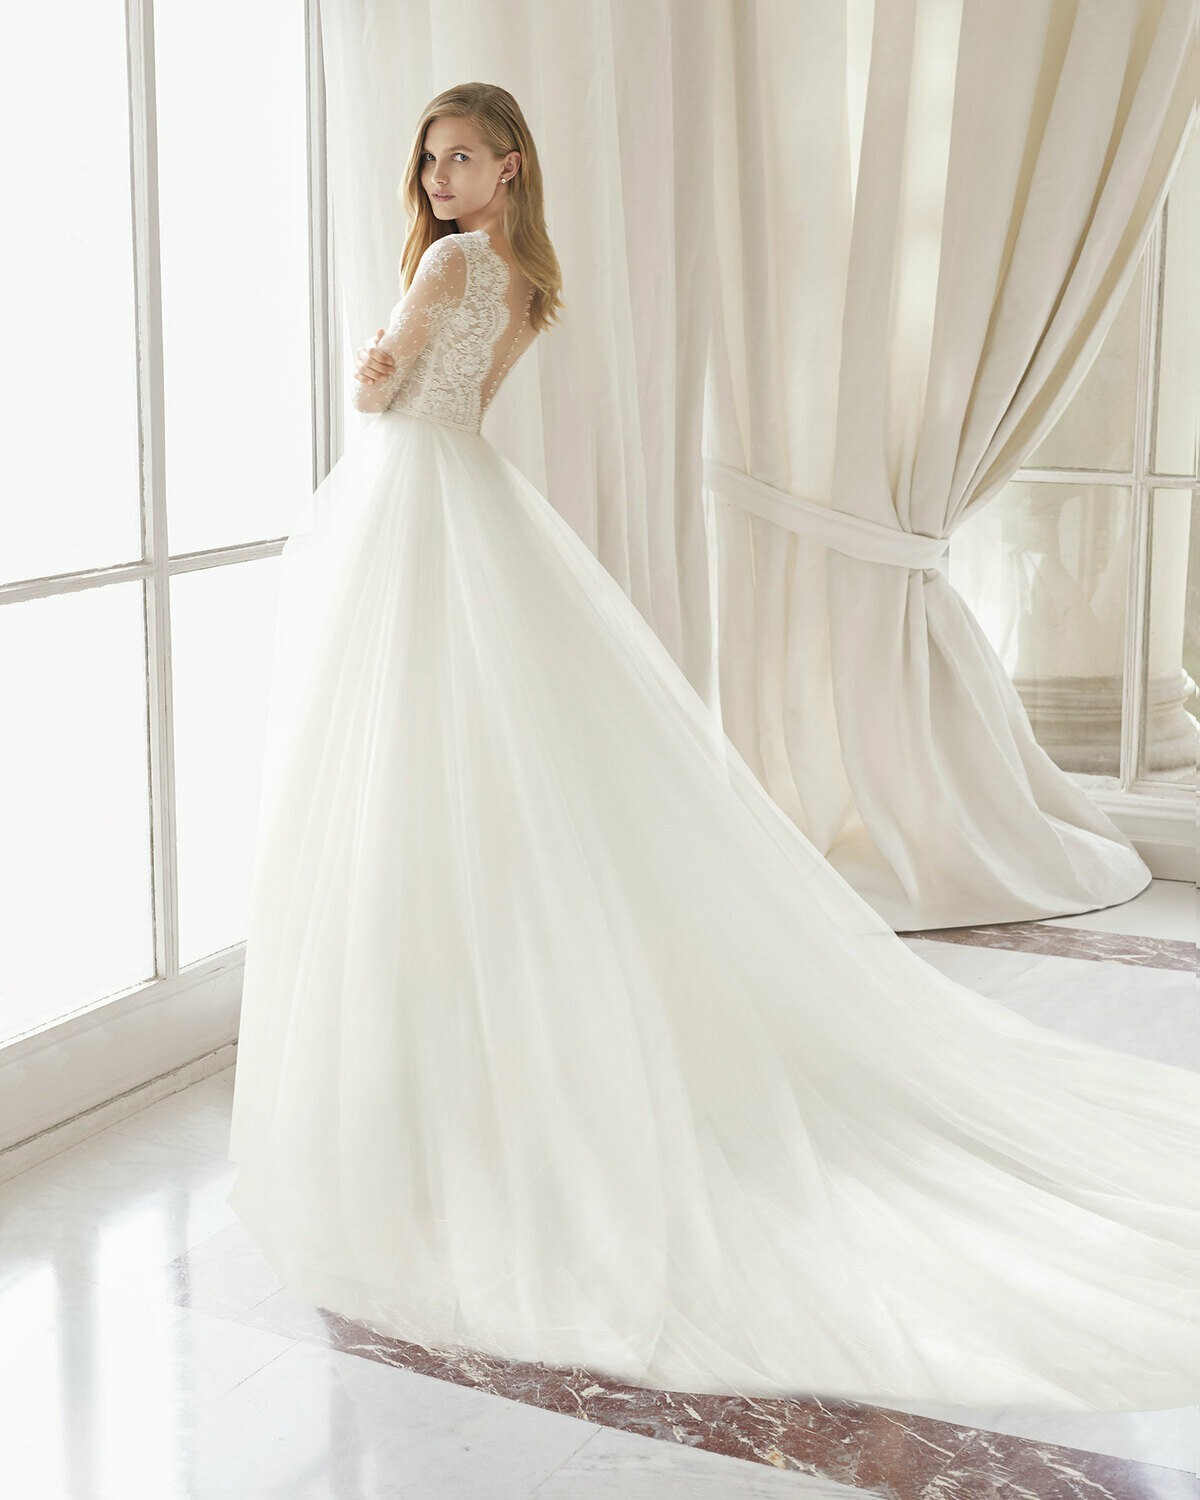 PERGOLA - abito da sposa collezione 2020 - Rosa Clarà Couture